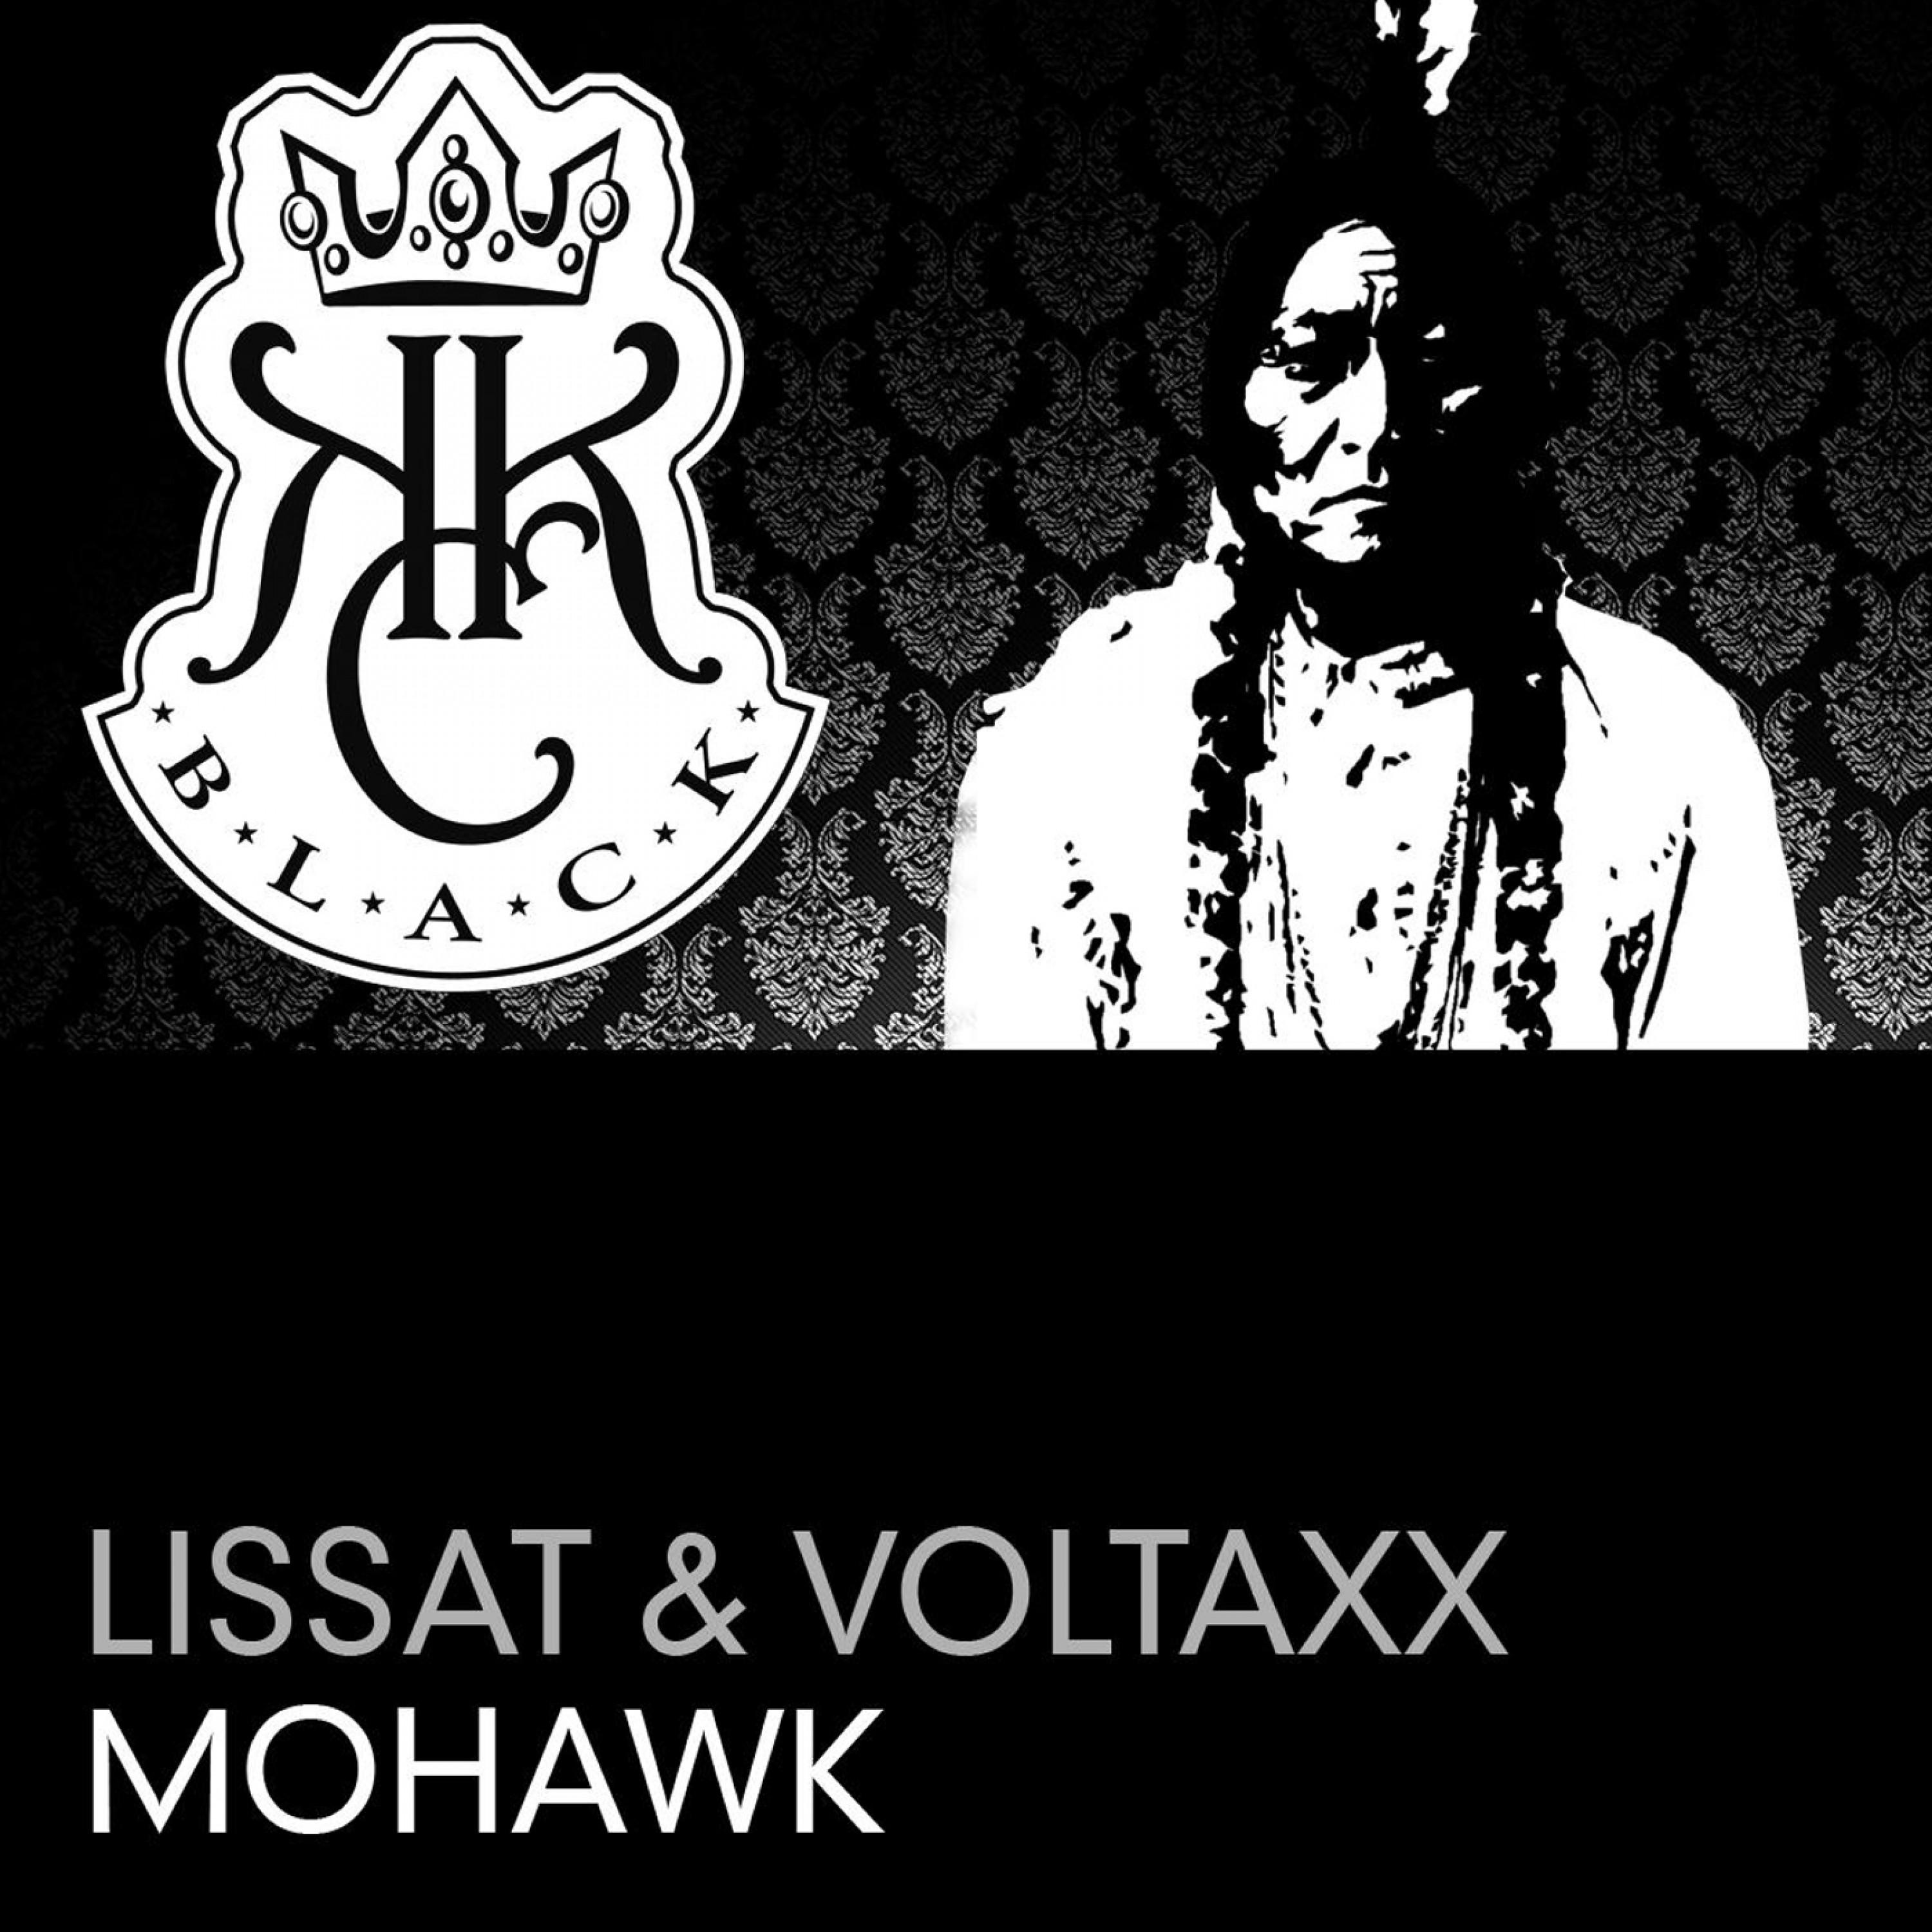 Mohawk (Original Club Mix)